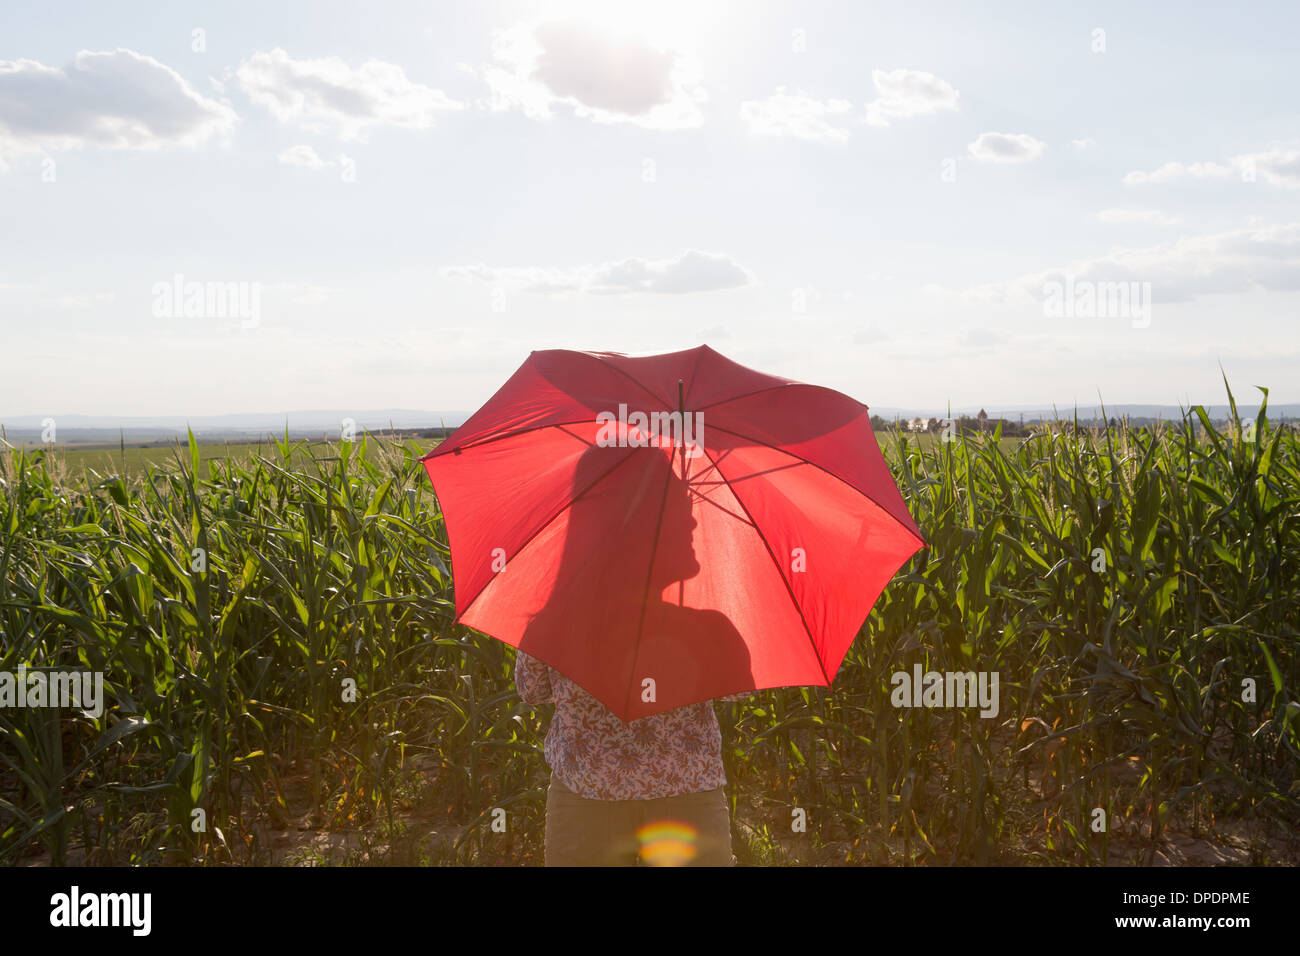 Frau stehend halten rote Regenschirm Stockfoto